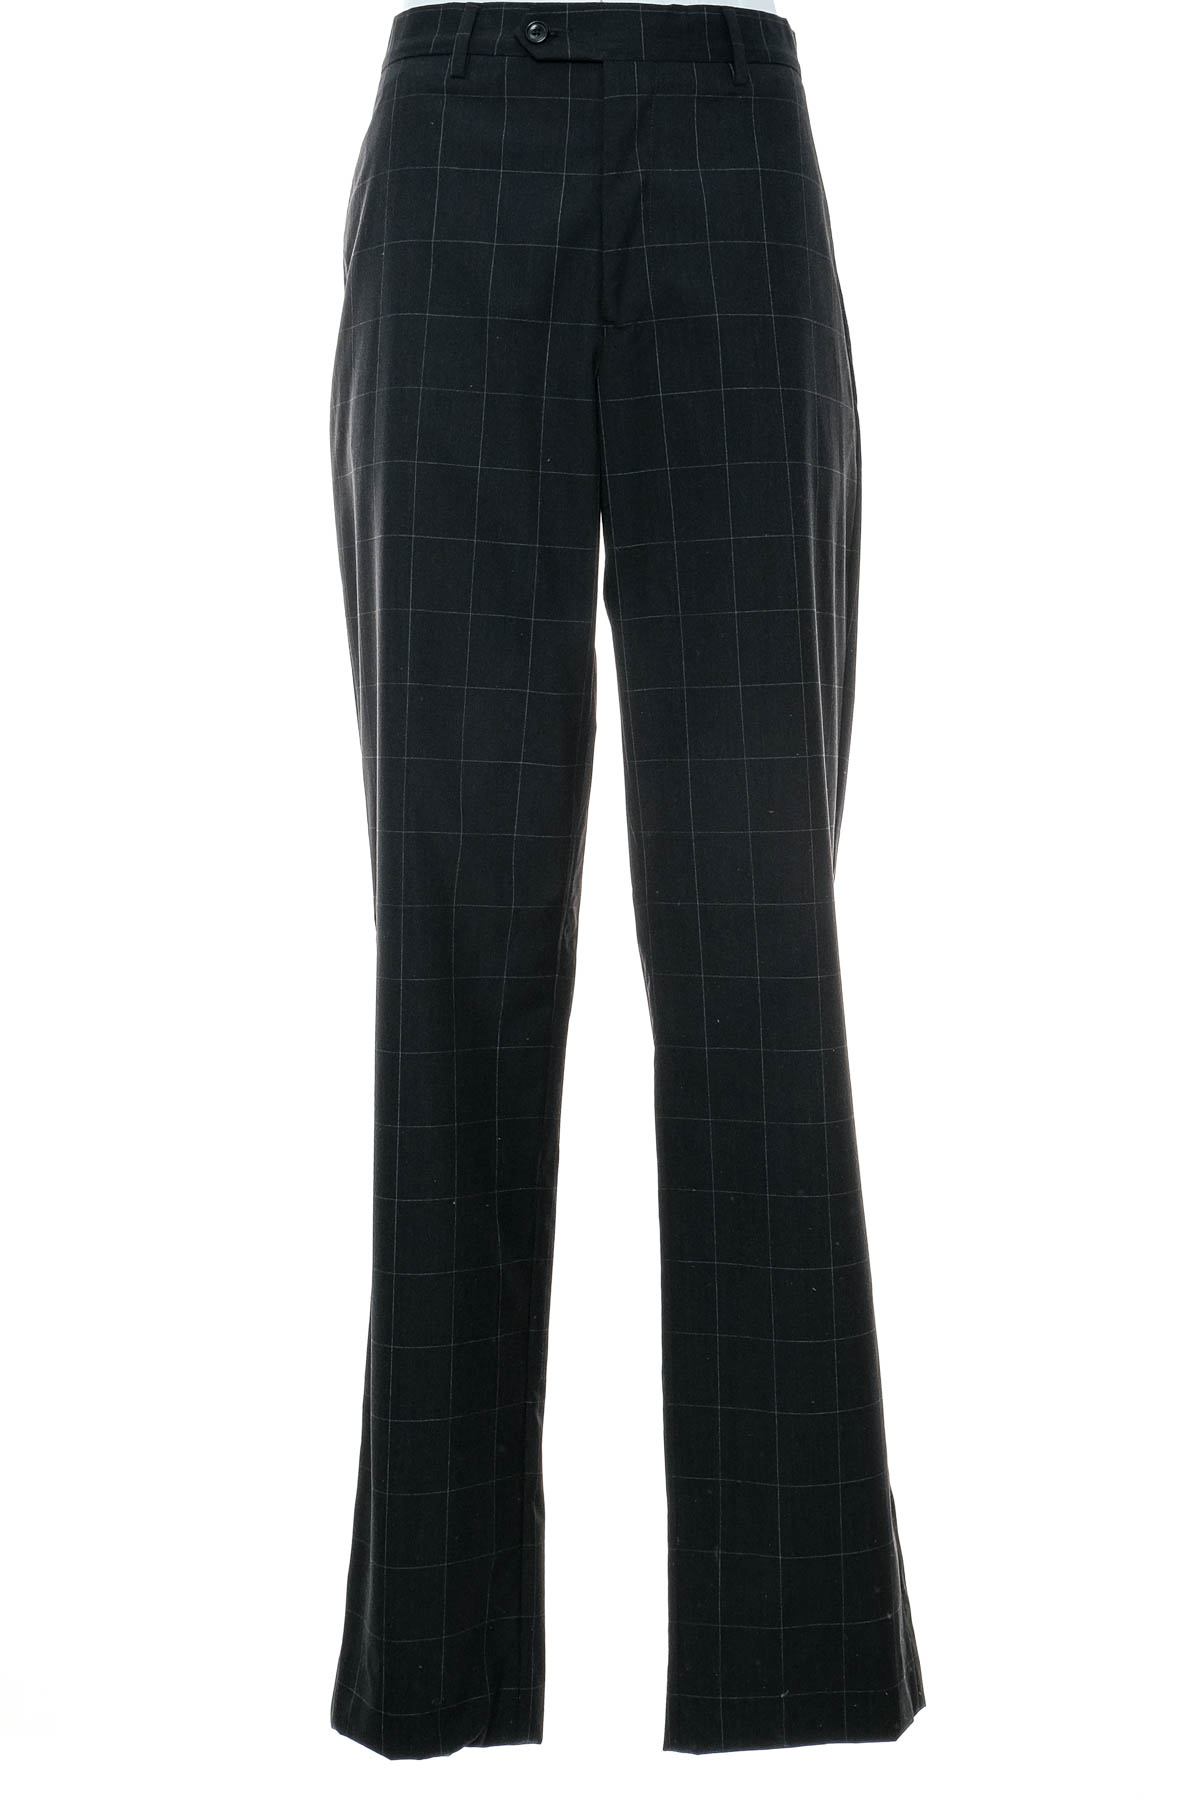 Pantalon pentru bărbați - Paul Fredrick - 0